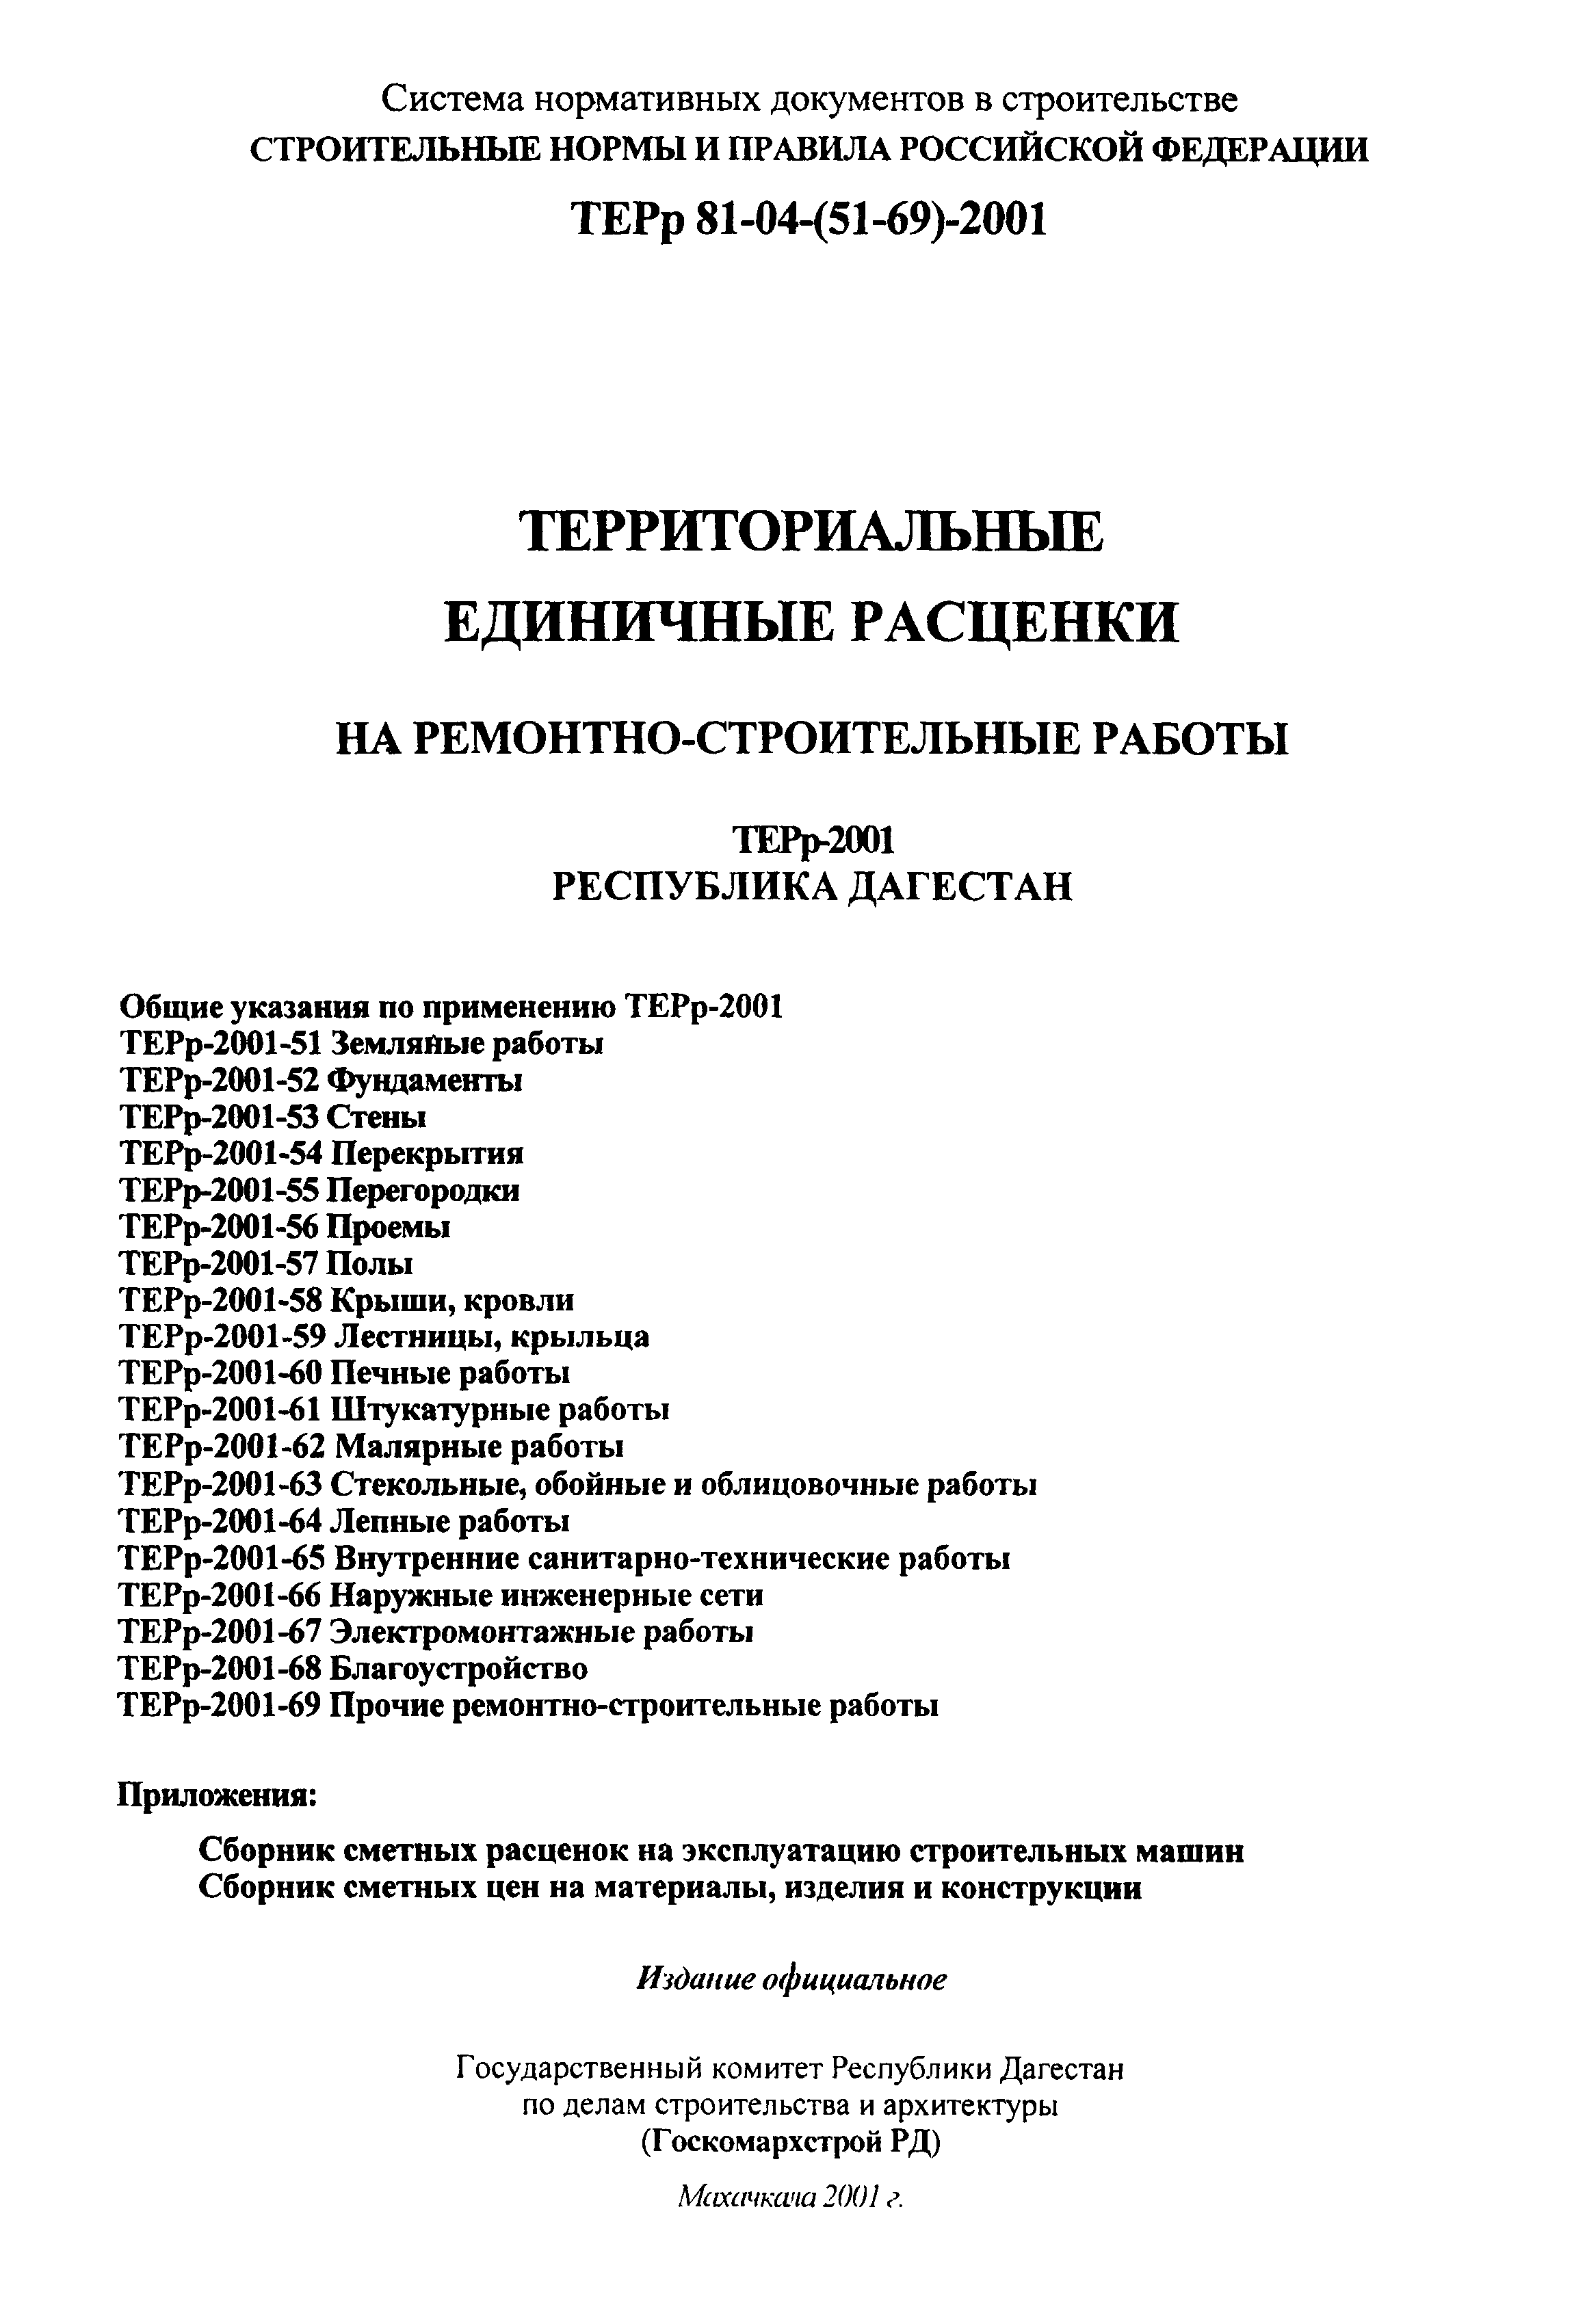 ТЕРр Республика Дагестан 2001-57